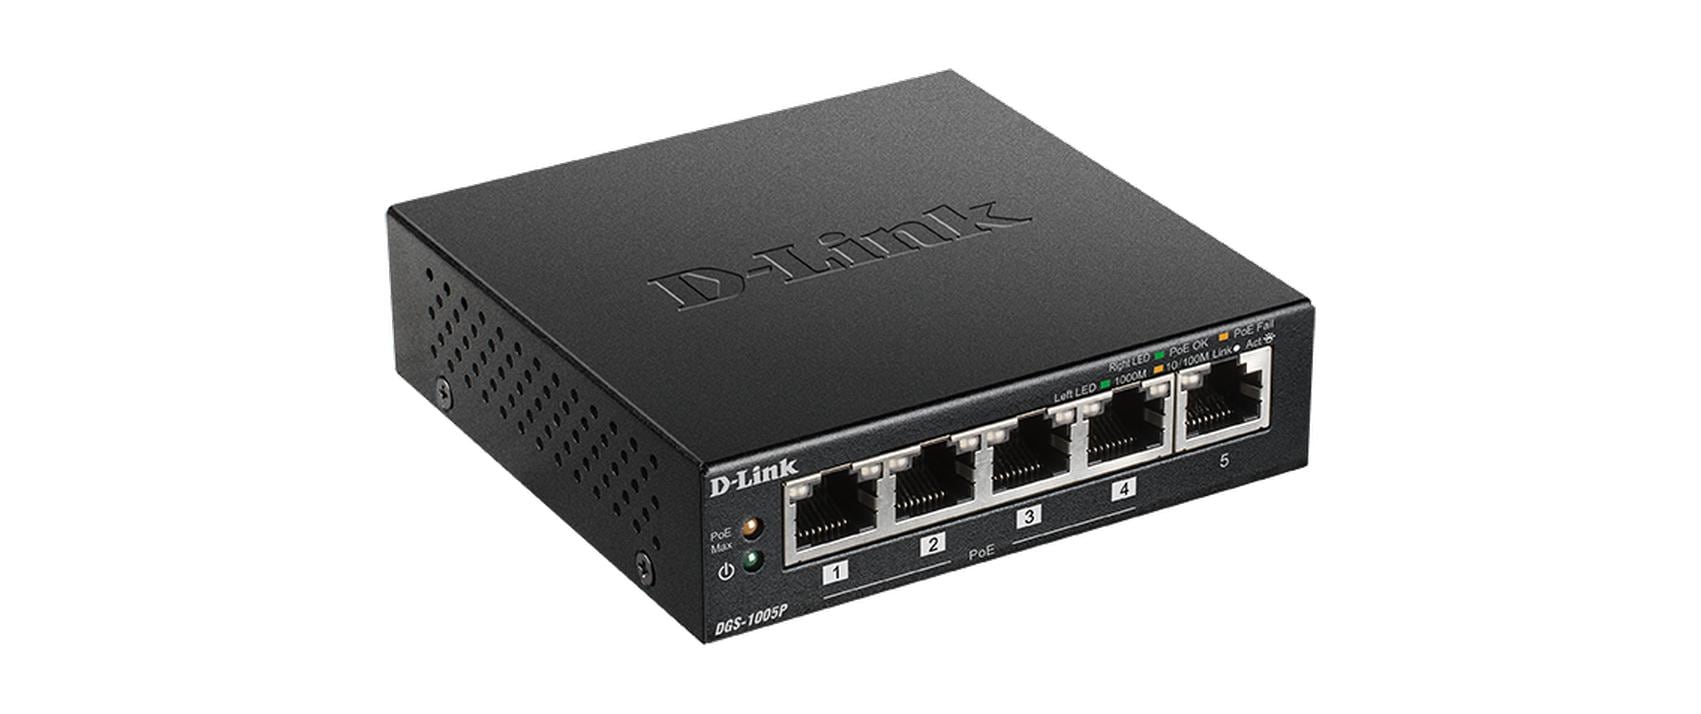 D-Link PoE+ Switch DGS-1005P/E 5 Port